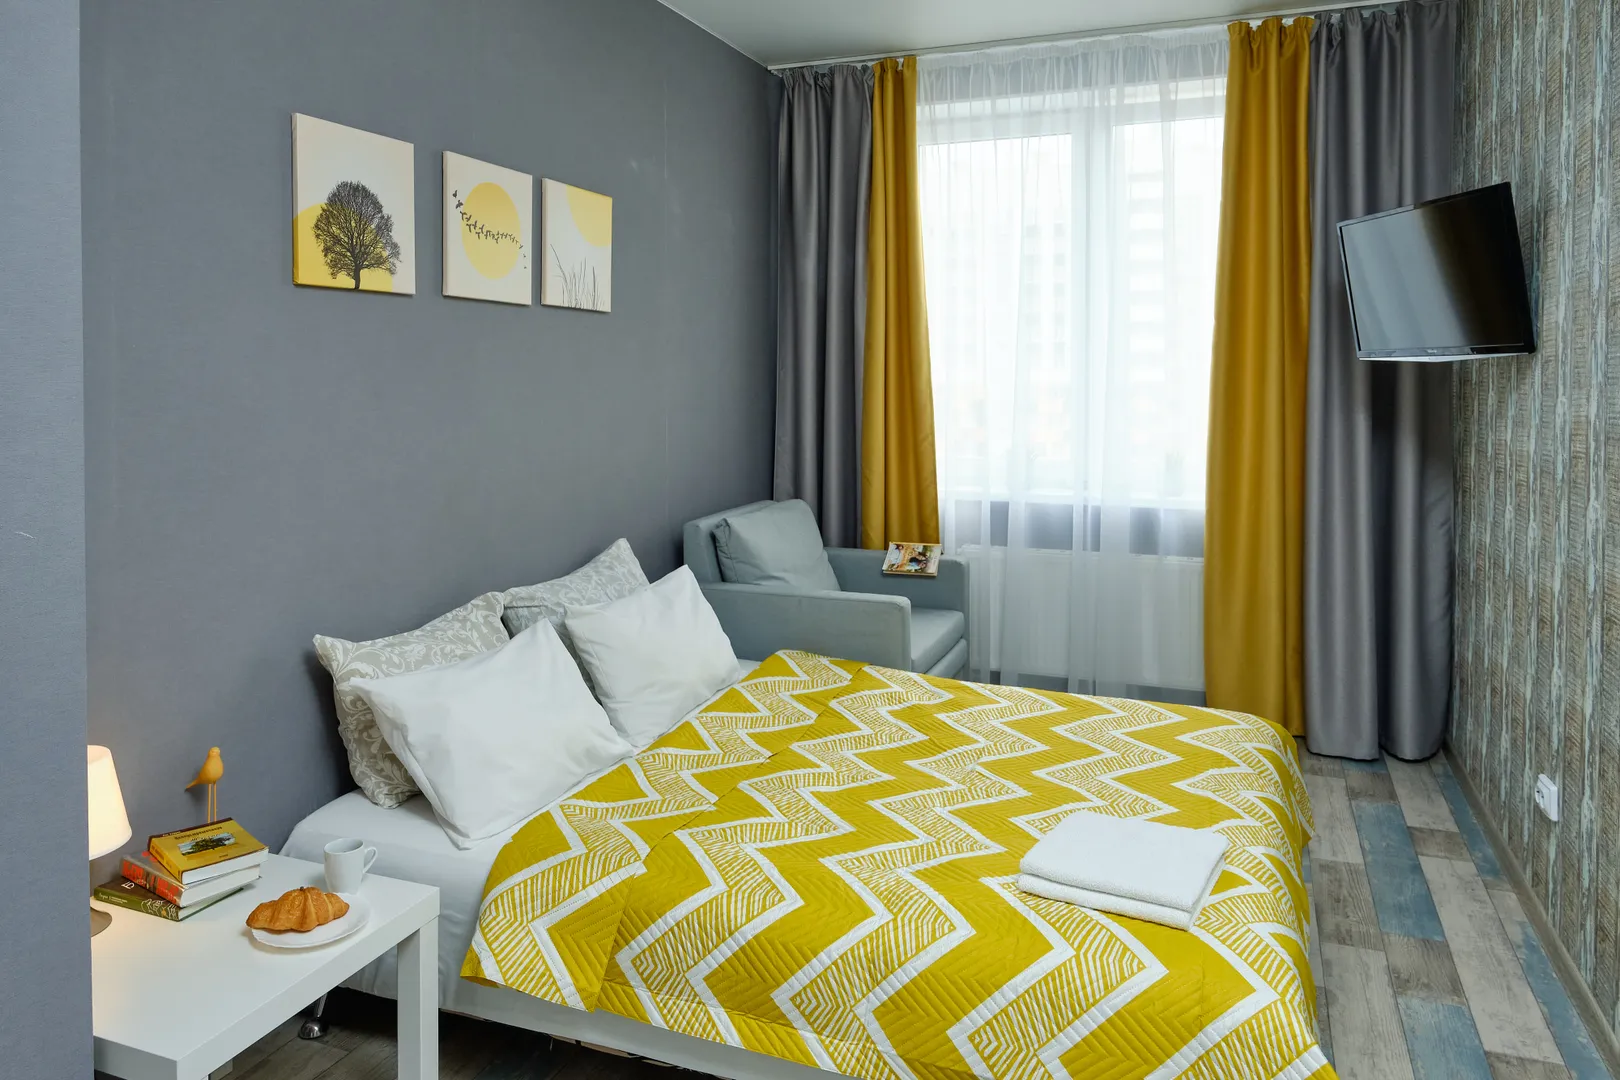 Большой двух спальный  диван, с удобным матрасом и чистейшим, ароматным постельным бельем.